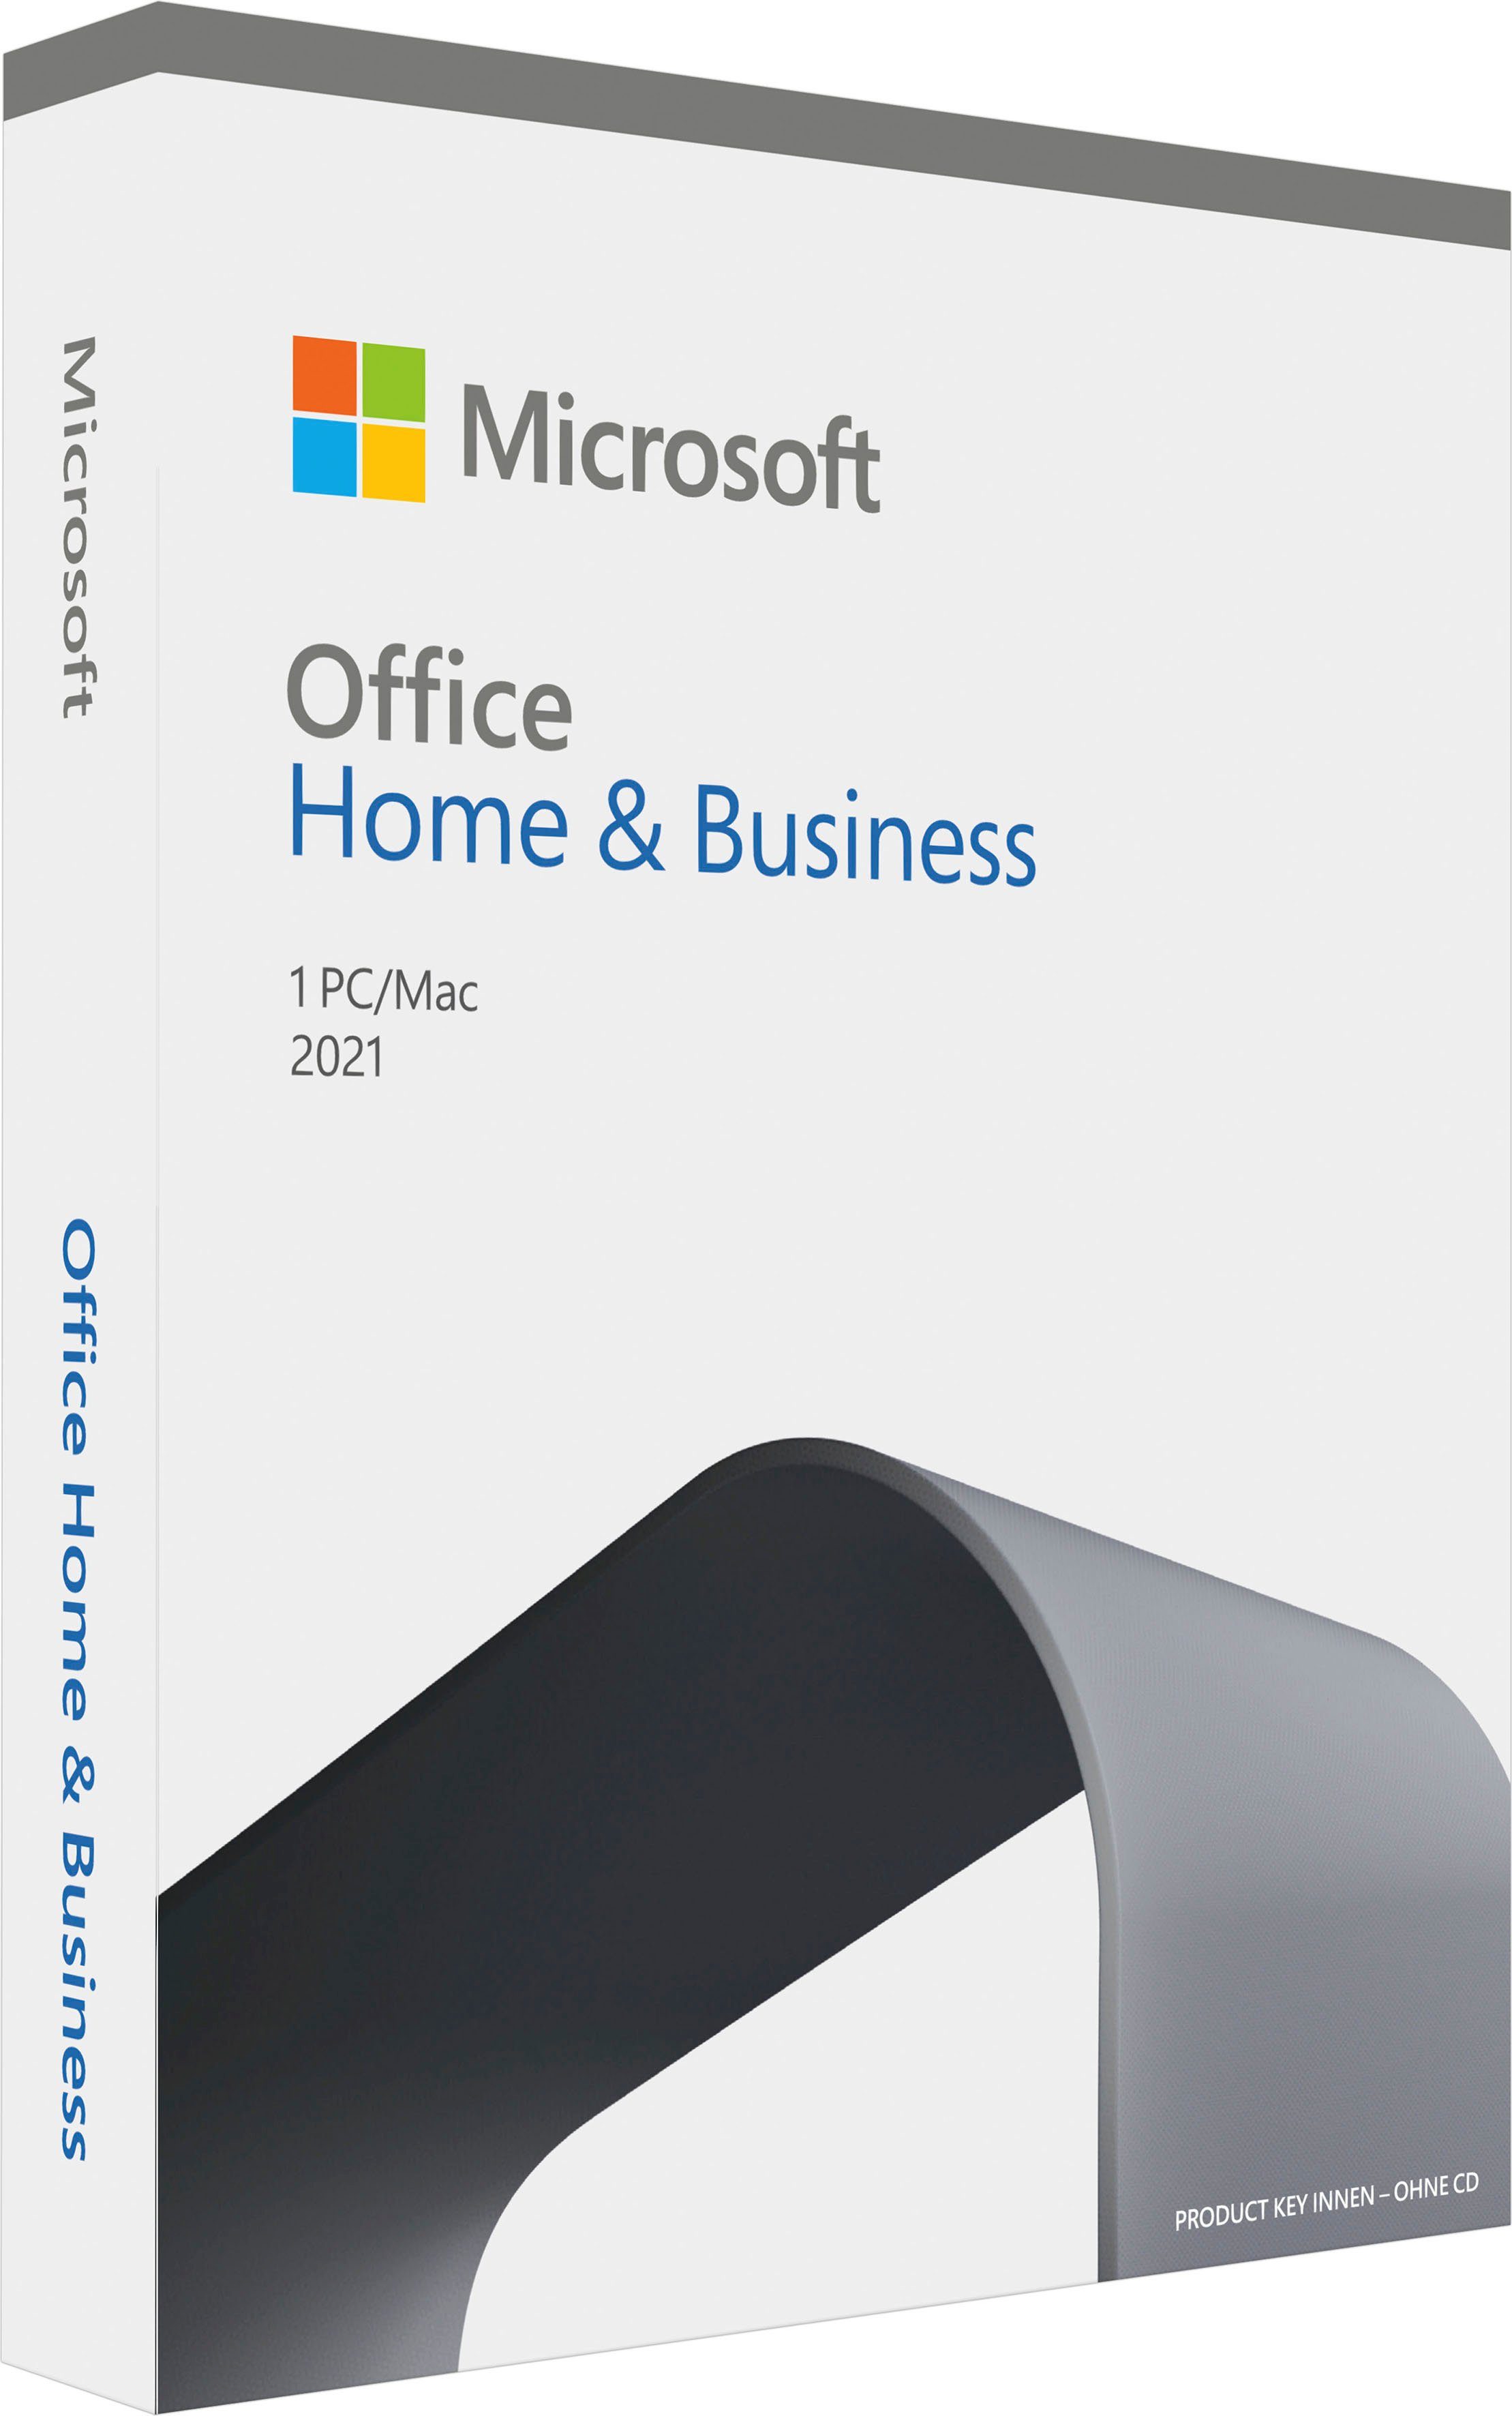 & Home (Officeprogramm, Business Lizenzschlüssel) Microsoft Office 2021